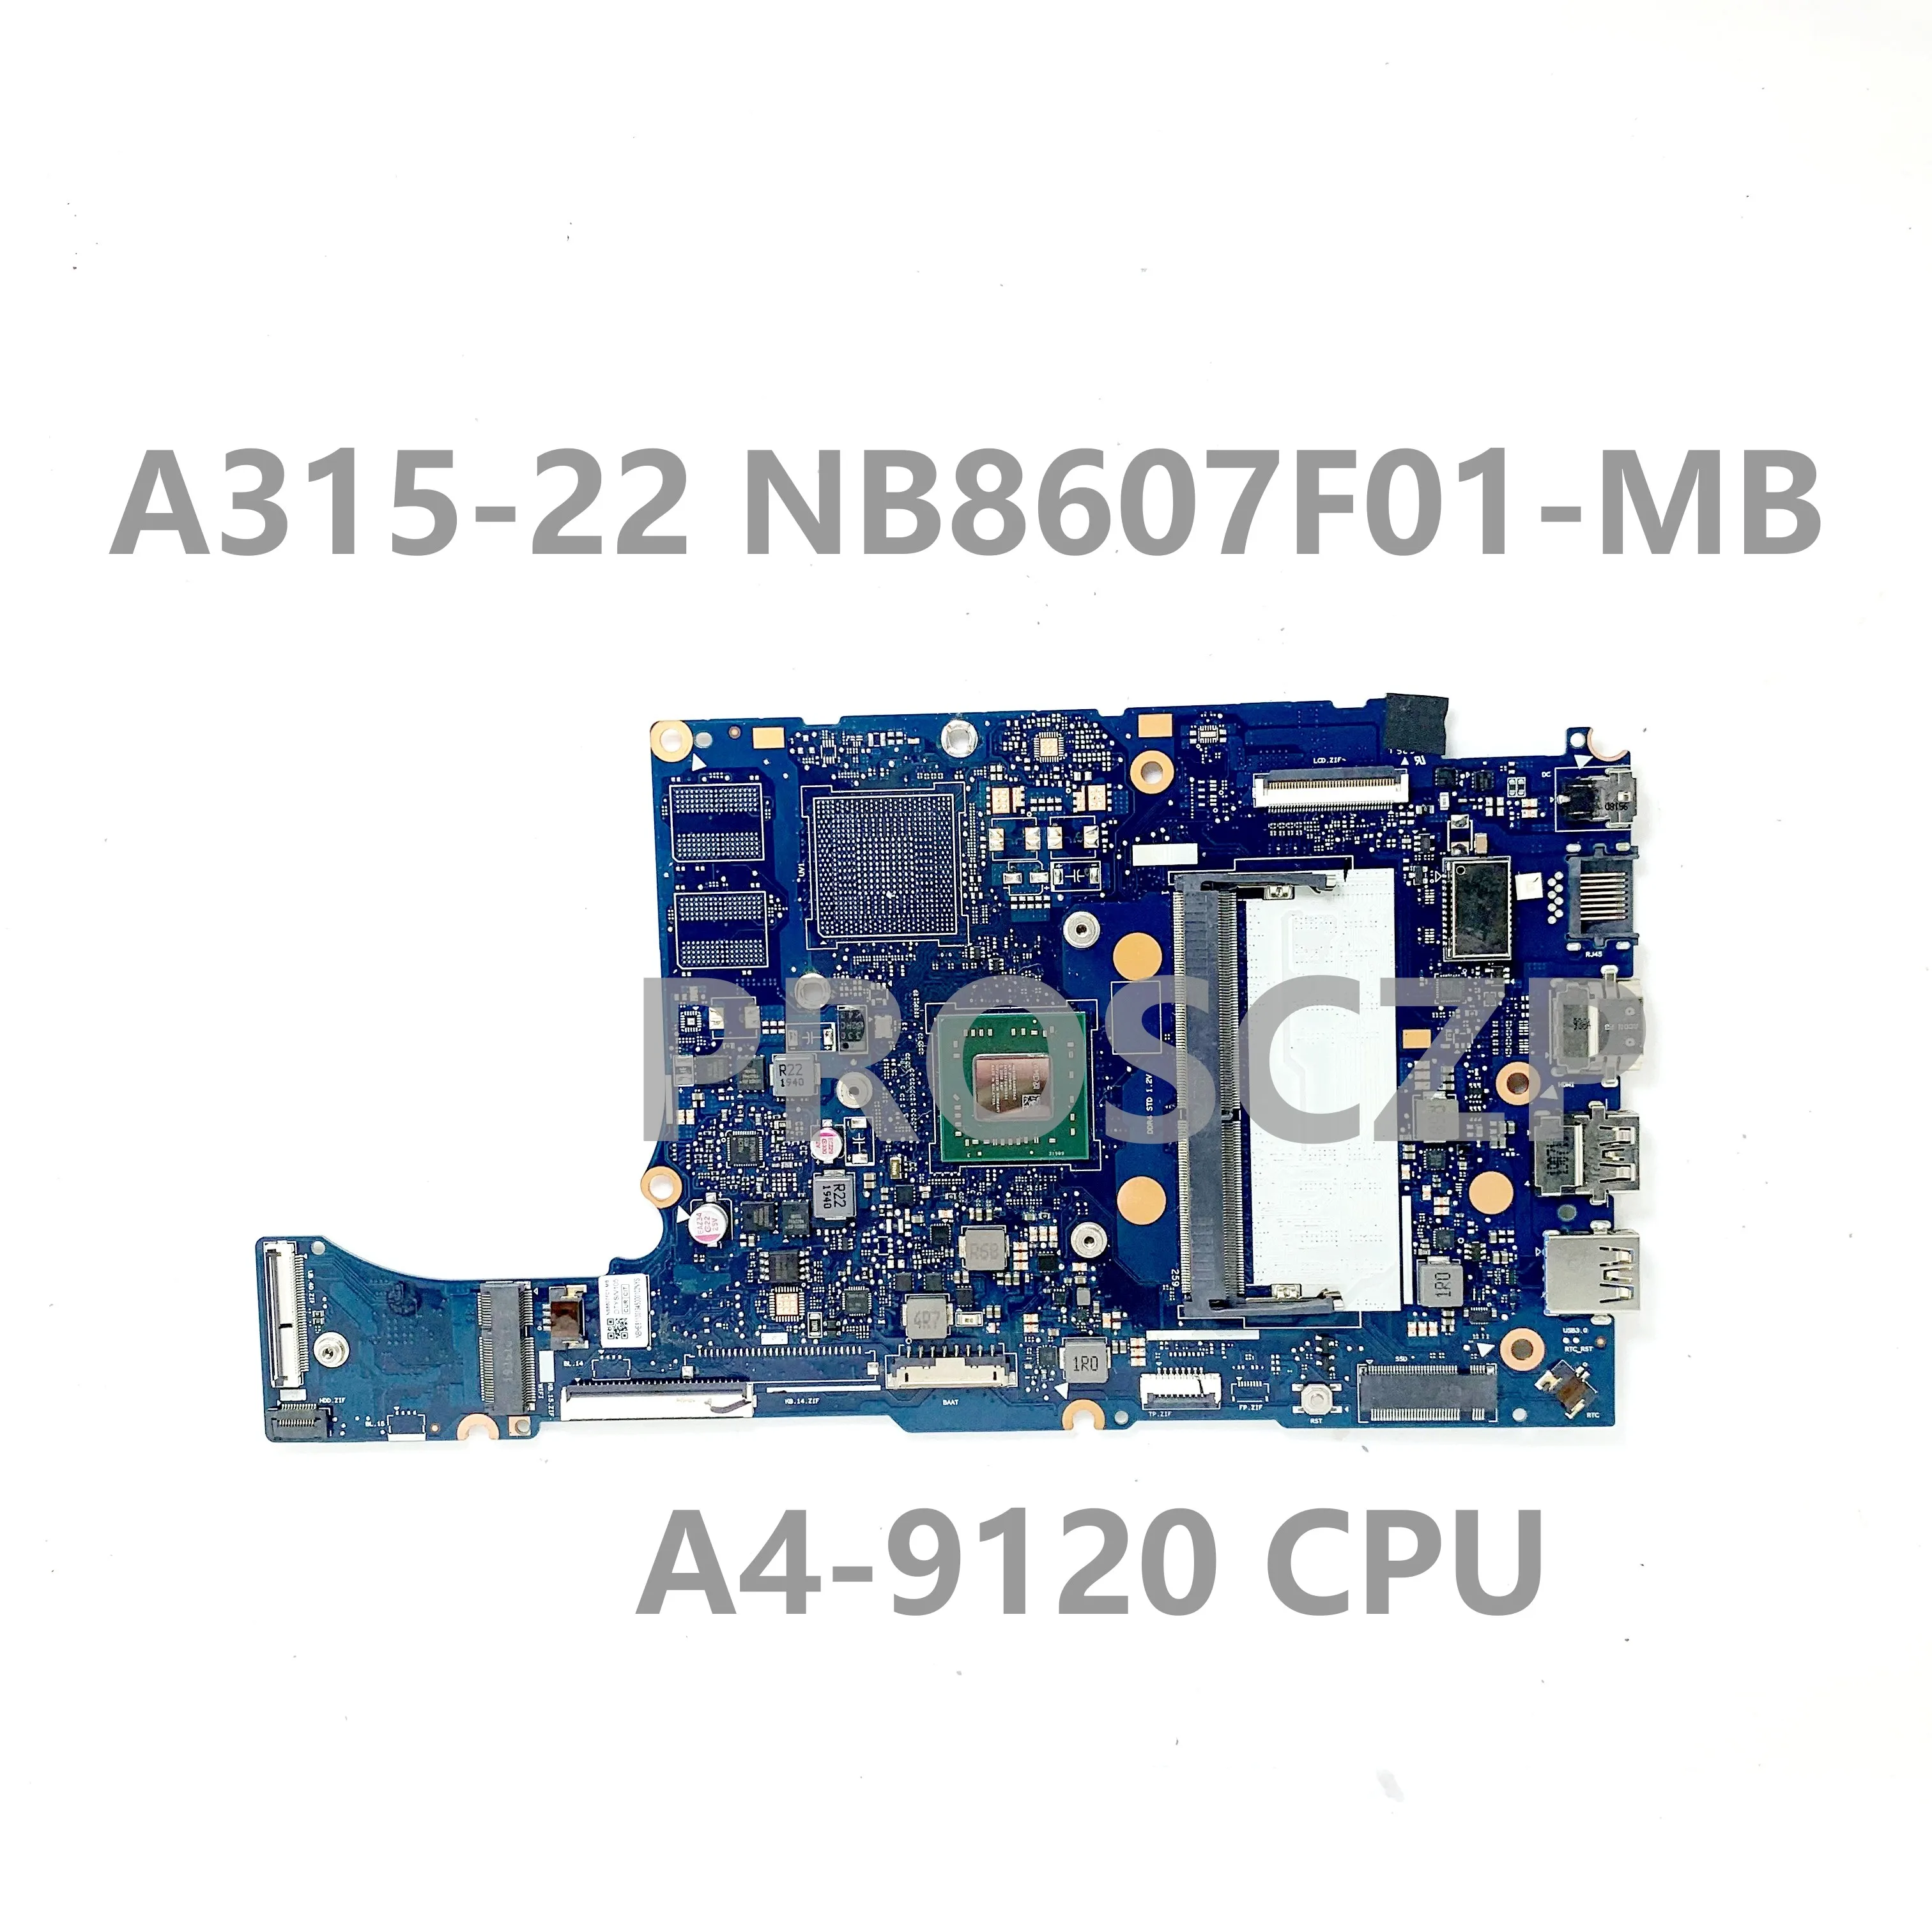 Высококачественная Материнская плата NB8607F01-MB С процессором A4-9120 Для Ноутбука Acer Aspier A315-22 Материнская плата 100% Полностью Протестирована, работает хорошо